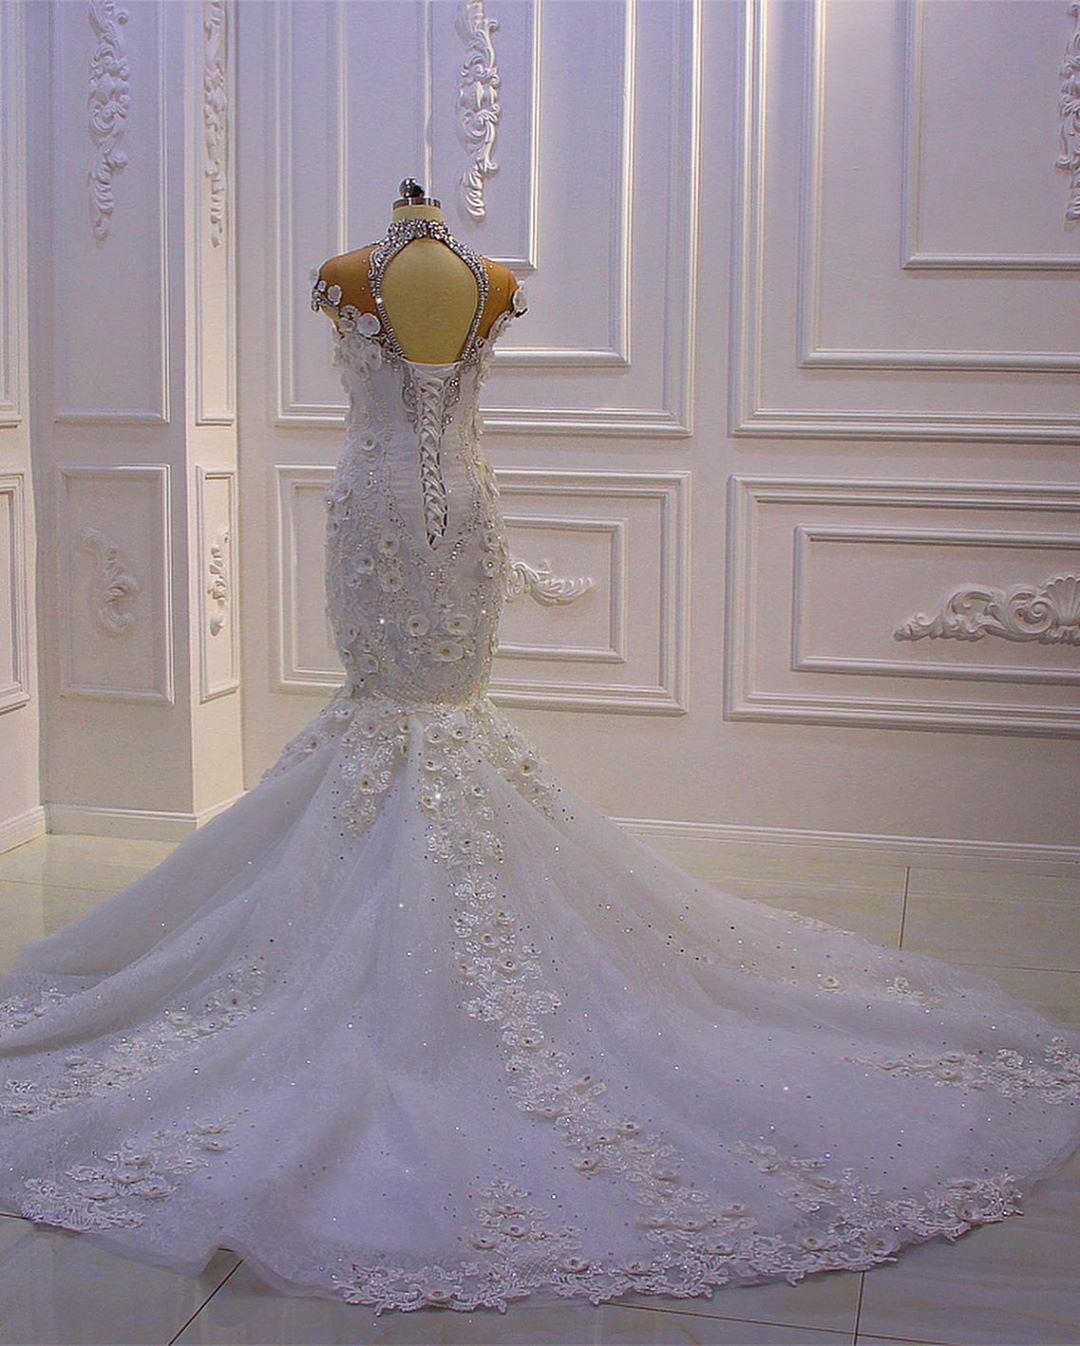 Finden Sie Extravagante Brautkleider Meerjungfrau online bei babyonlinedress.de. Hochzeitskleid Mit Spitze für Sie zur Hochzeit gehen.